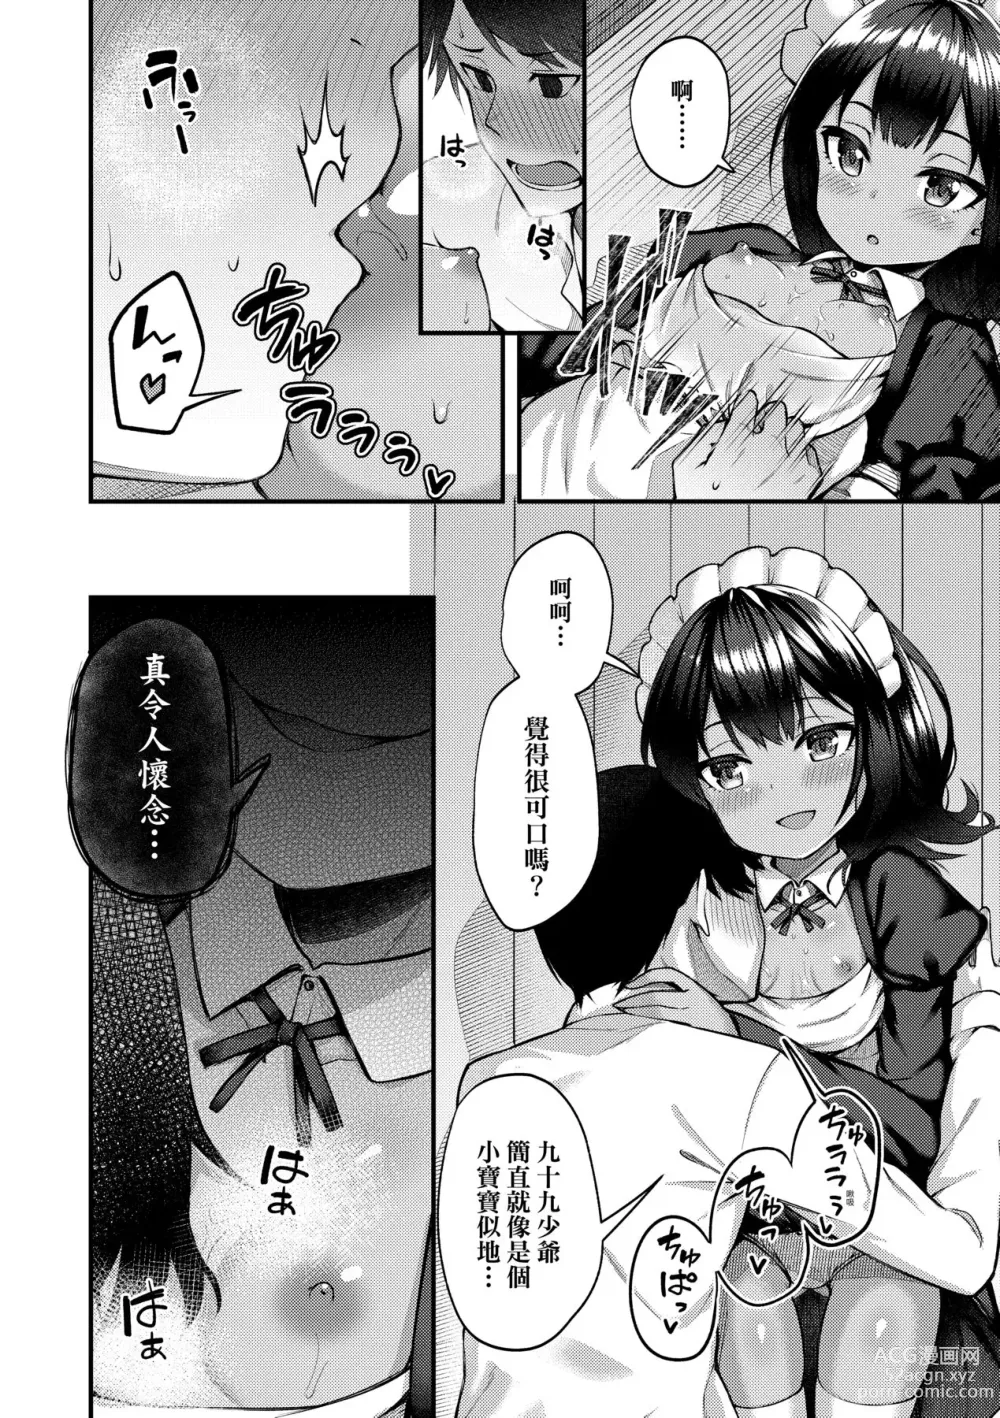 Page 15 of manga Chojyu Giga (decensored)